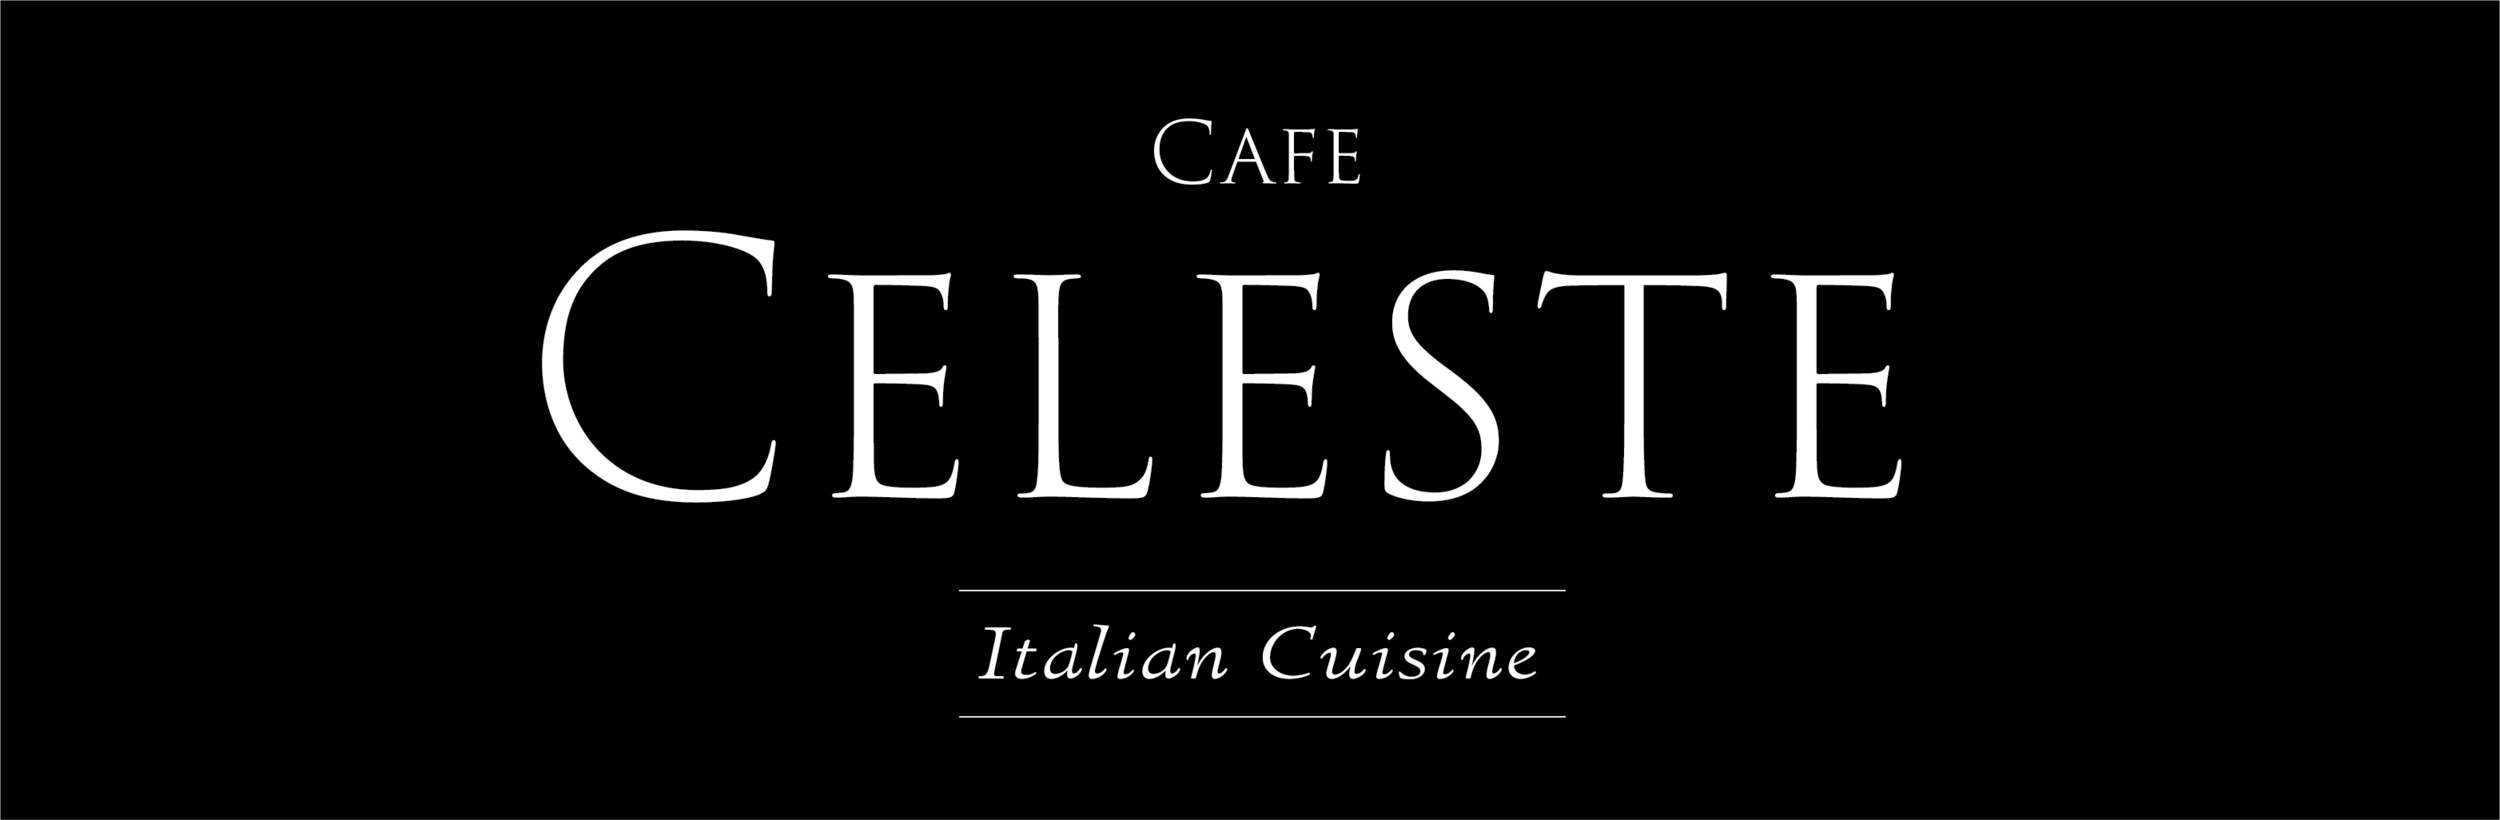 Cafe Celeste